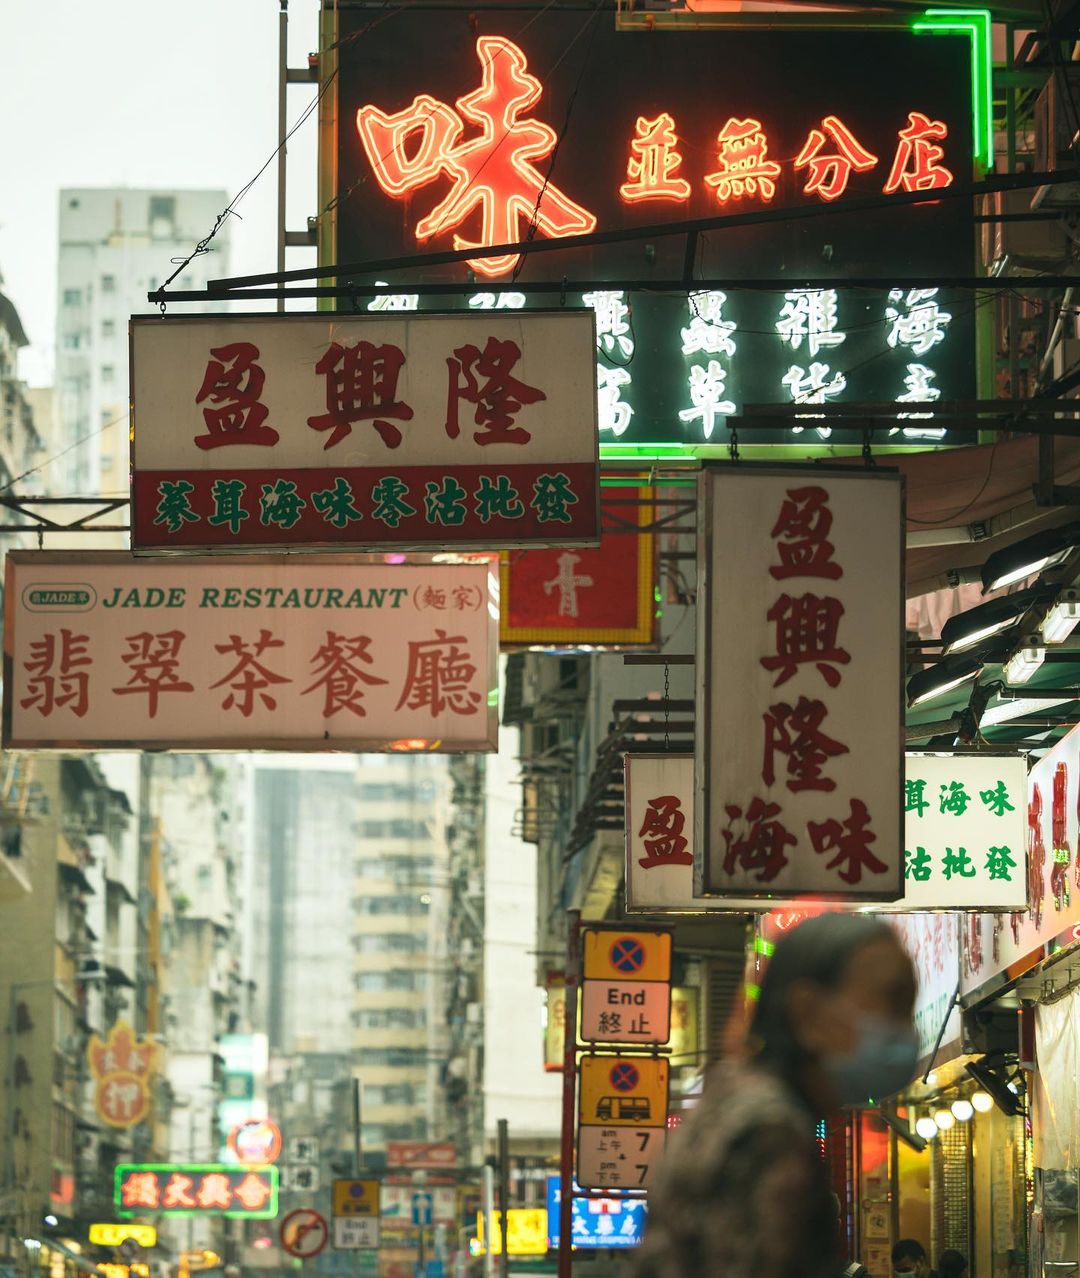 Непостижимый мир улиц на снимках Джереми Чанга Джереми, пейзажах, Читать, подписчиков, почти, Instagram, делится, работами, Своими, типографике, геометрии, настроению, вниманием, уличных, Jeremy, городских, фокусируется, Гонконге, проживающий, время